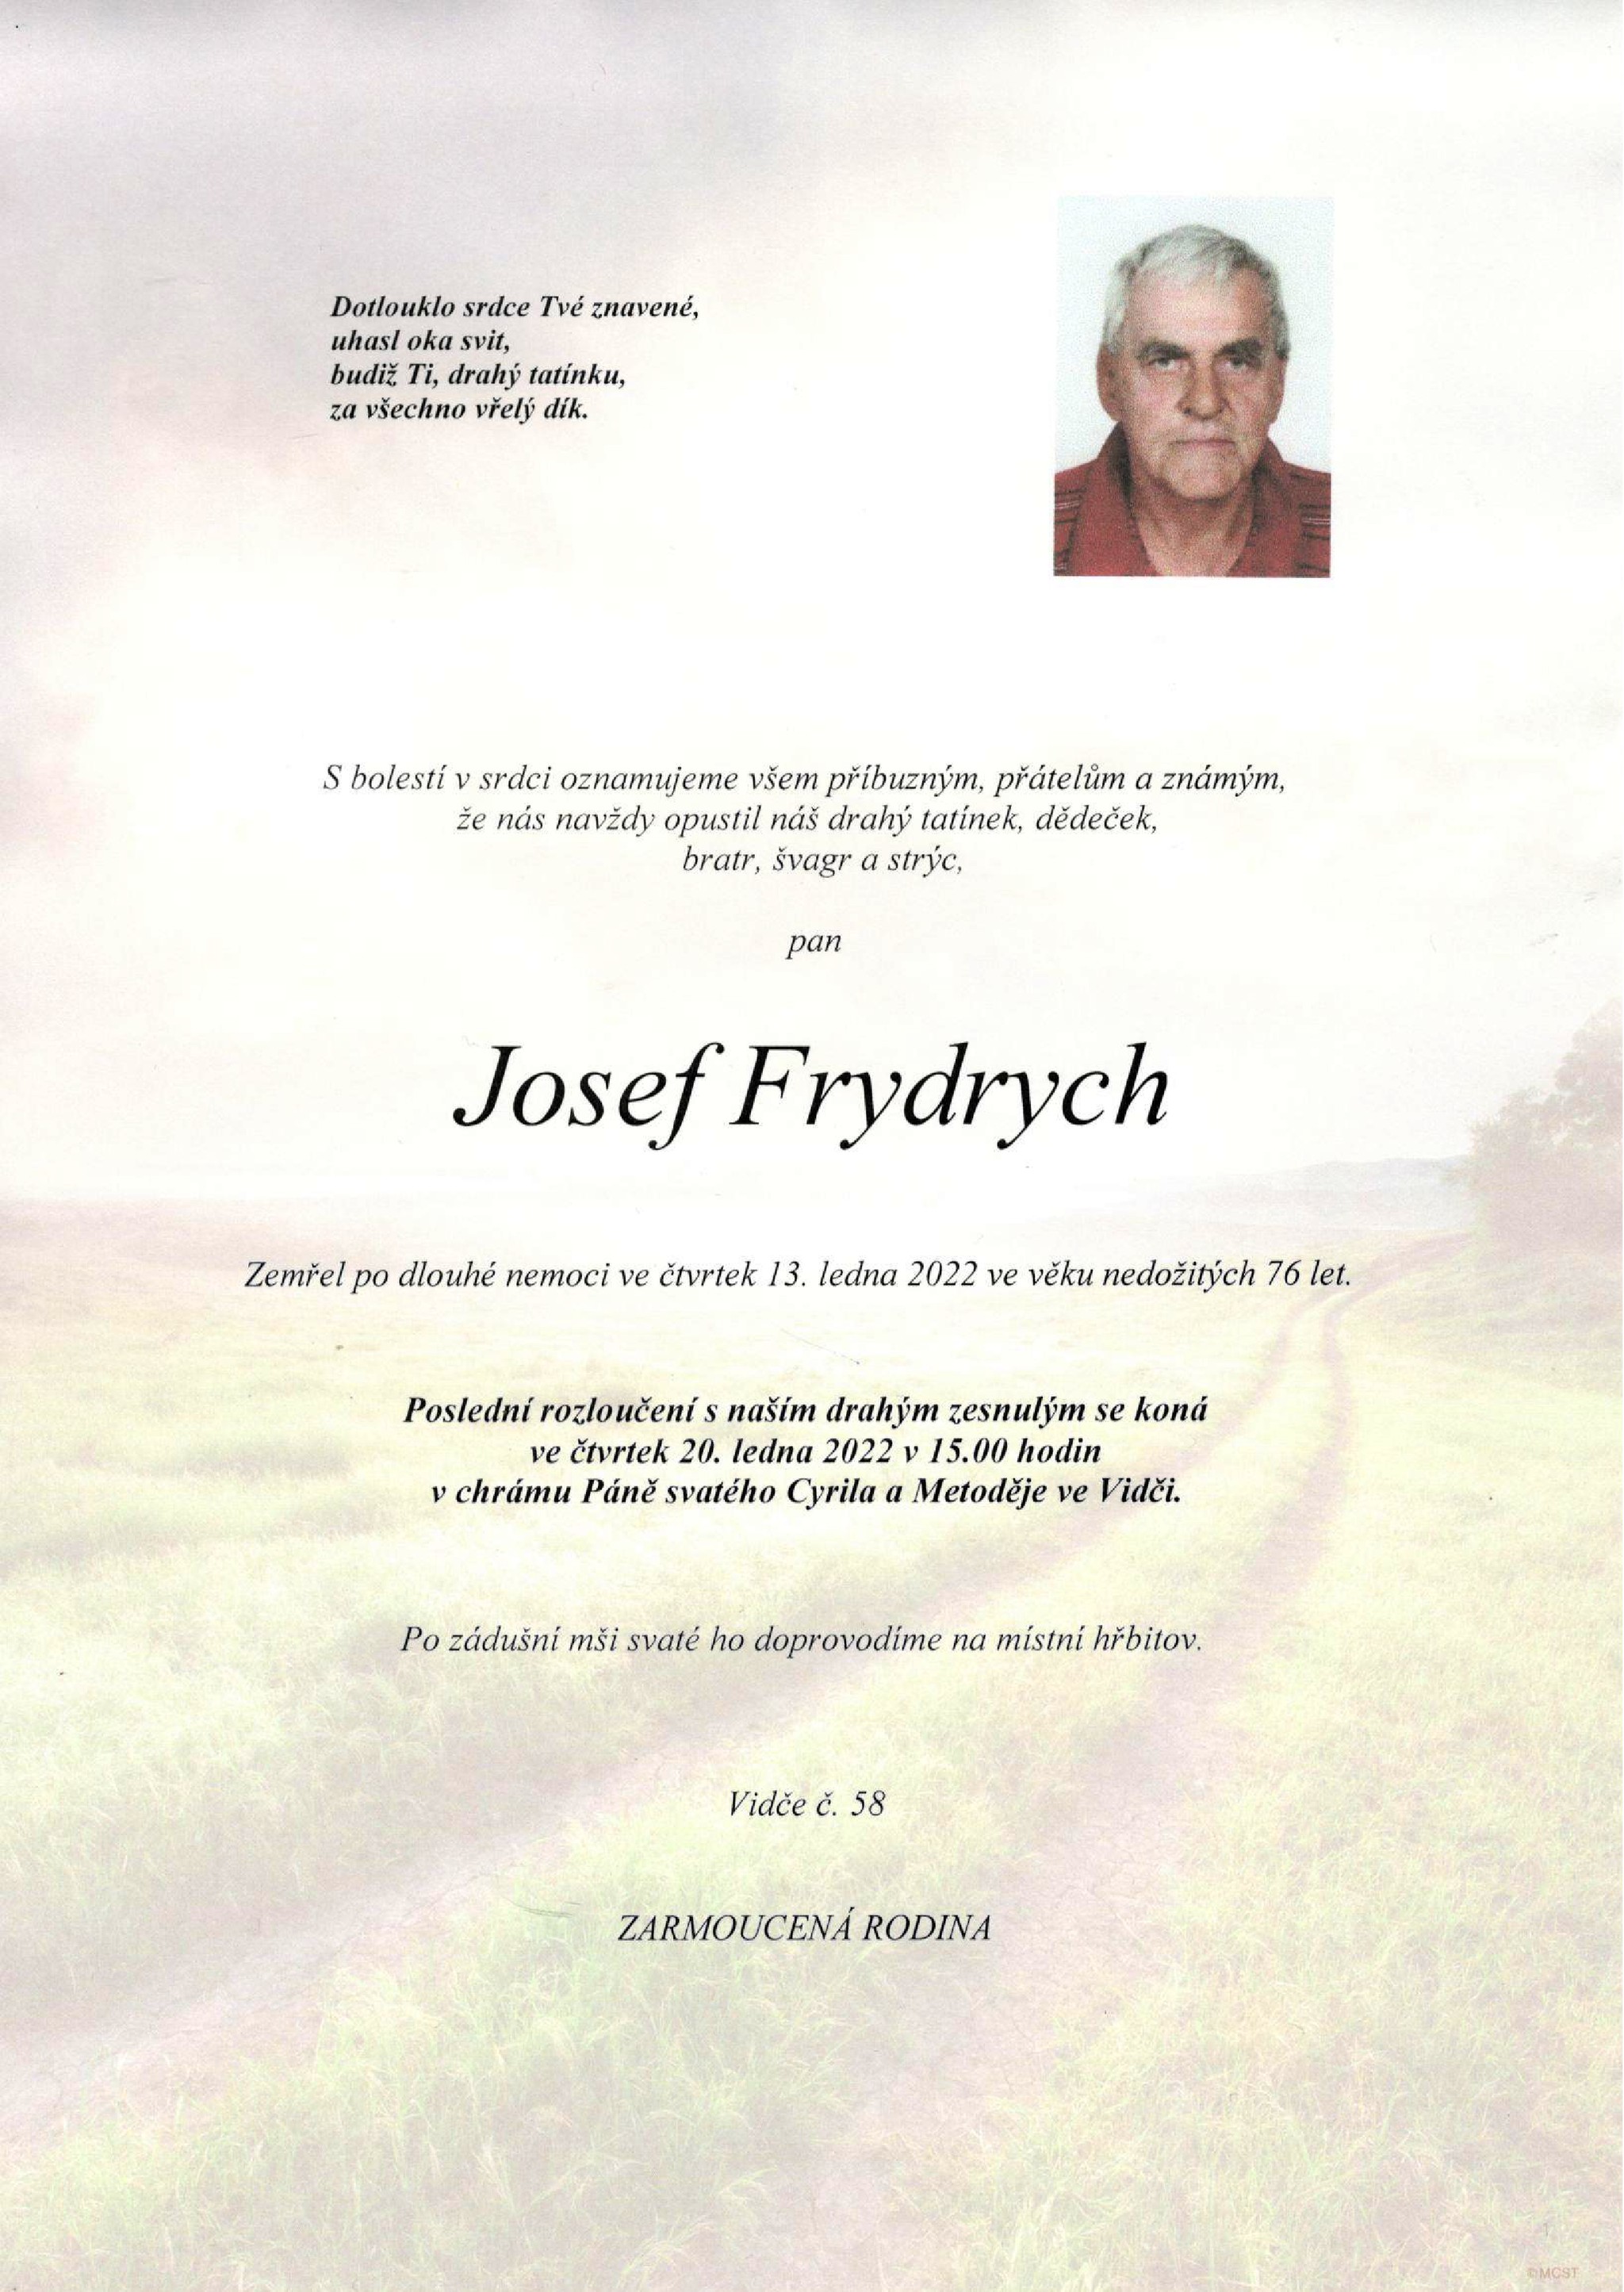 Josef Frydrych